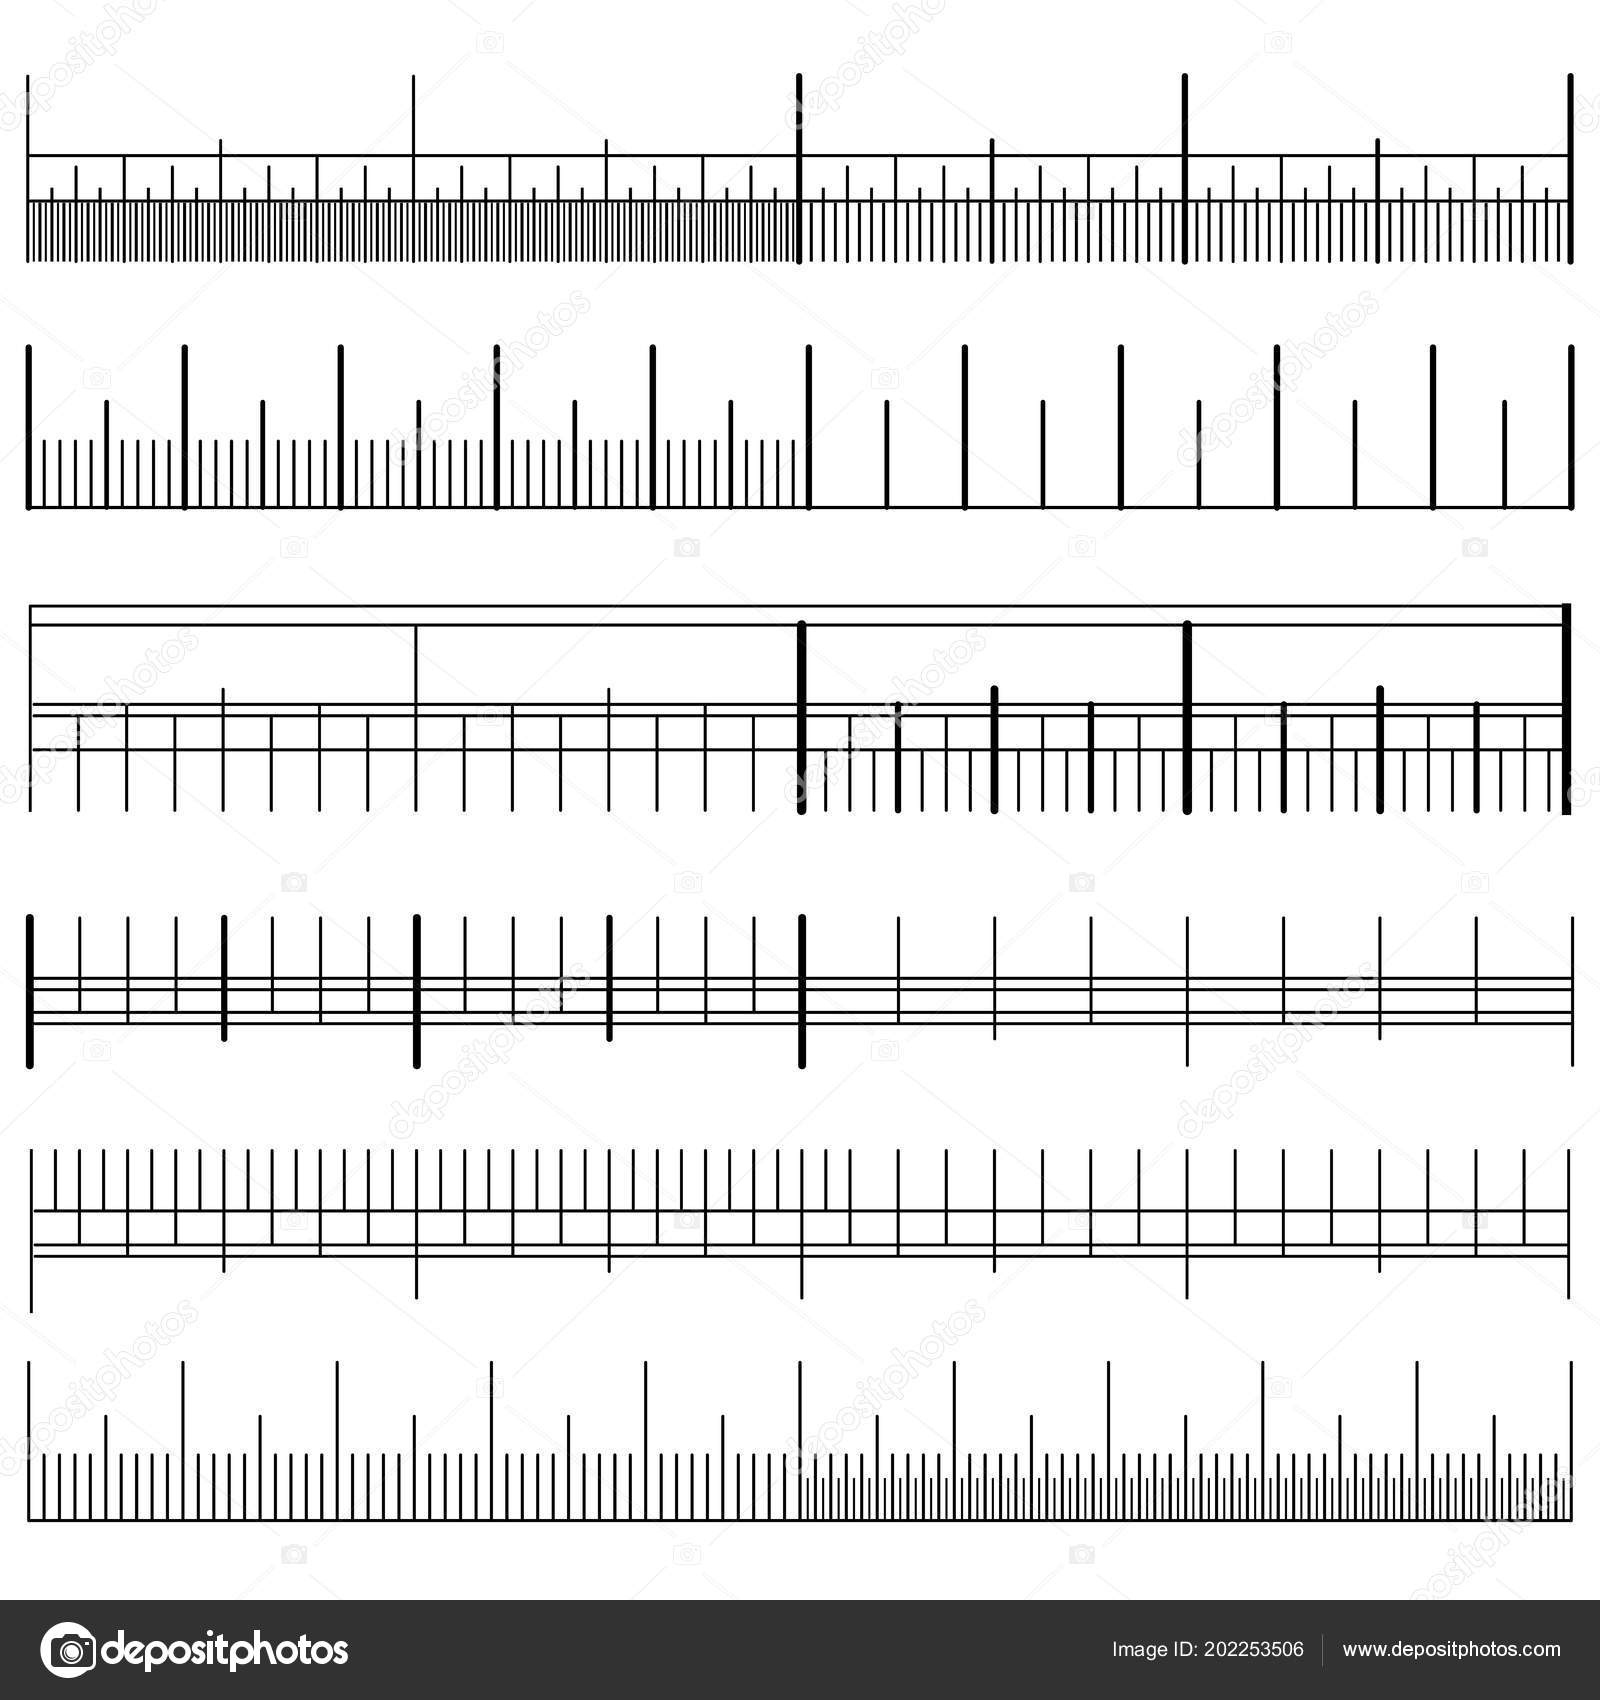 All Measurement Units Chart